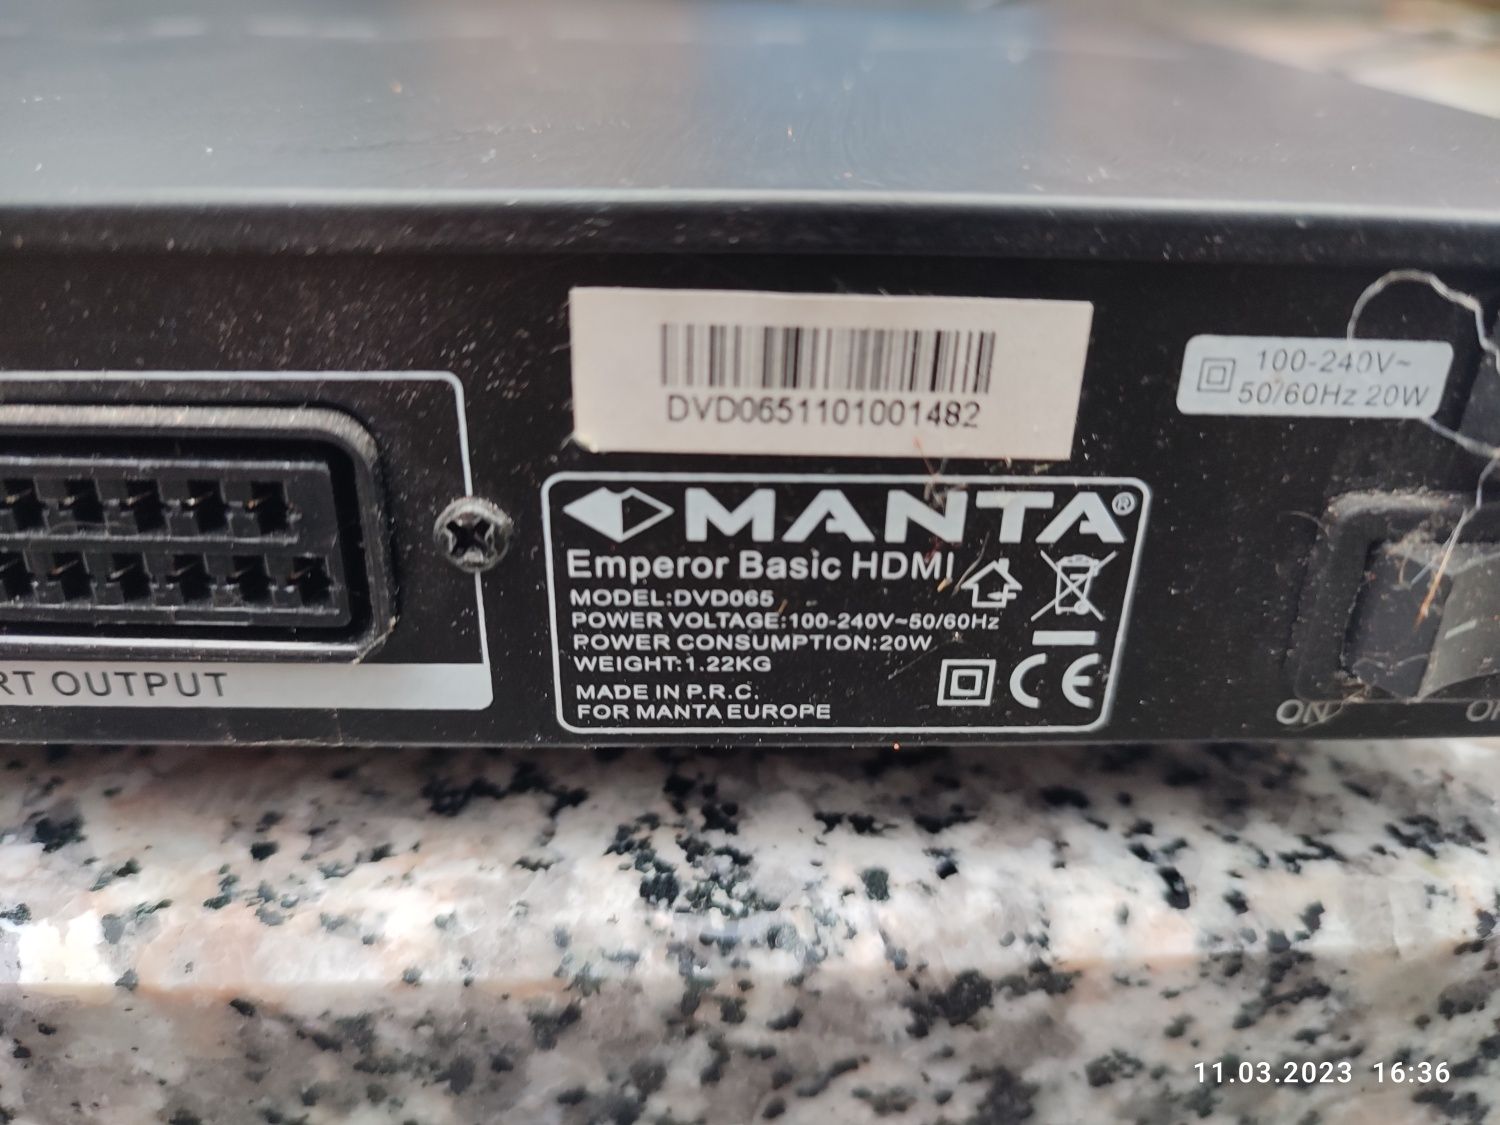 Odtwarzacz Dvd  Manta  model:dvd065 stan DB